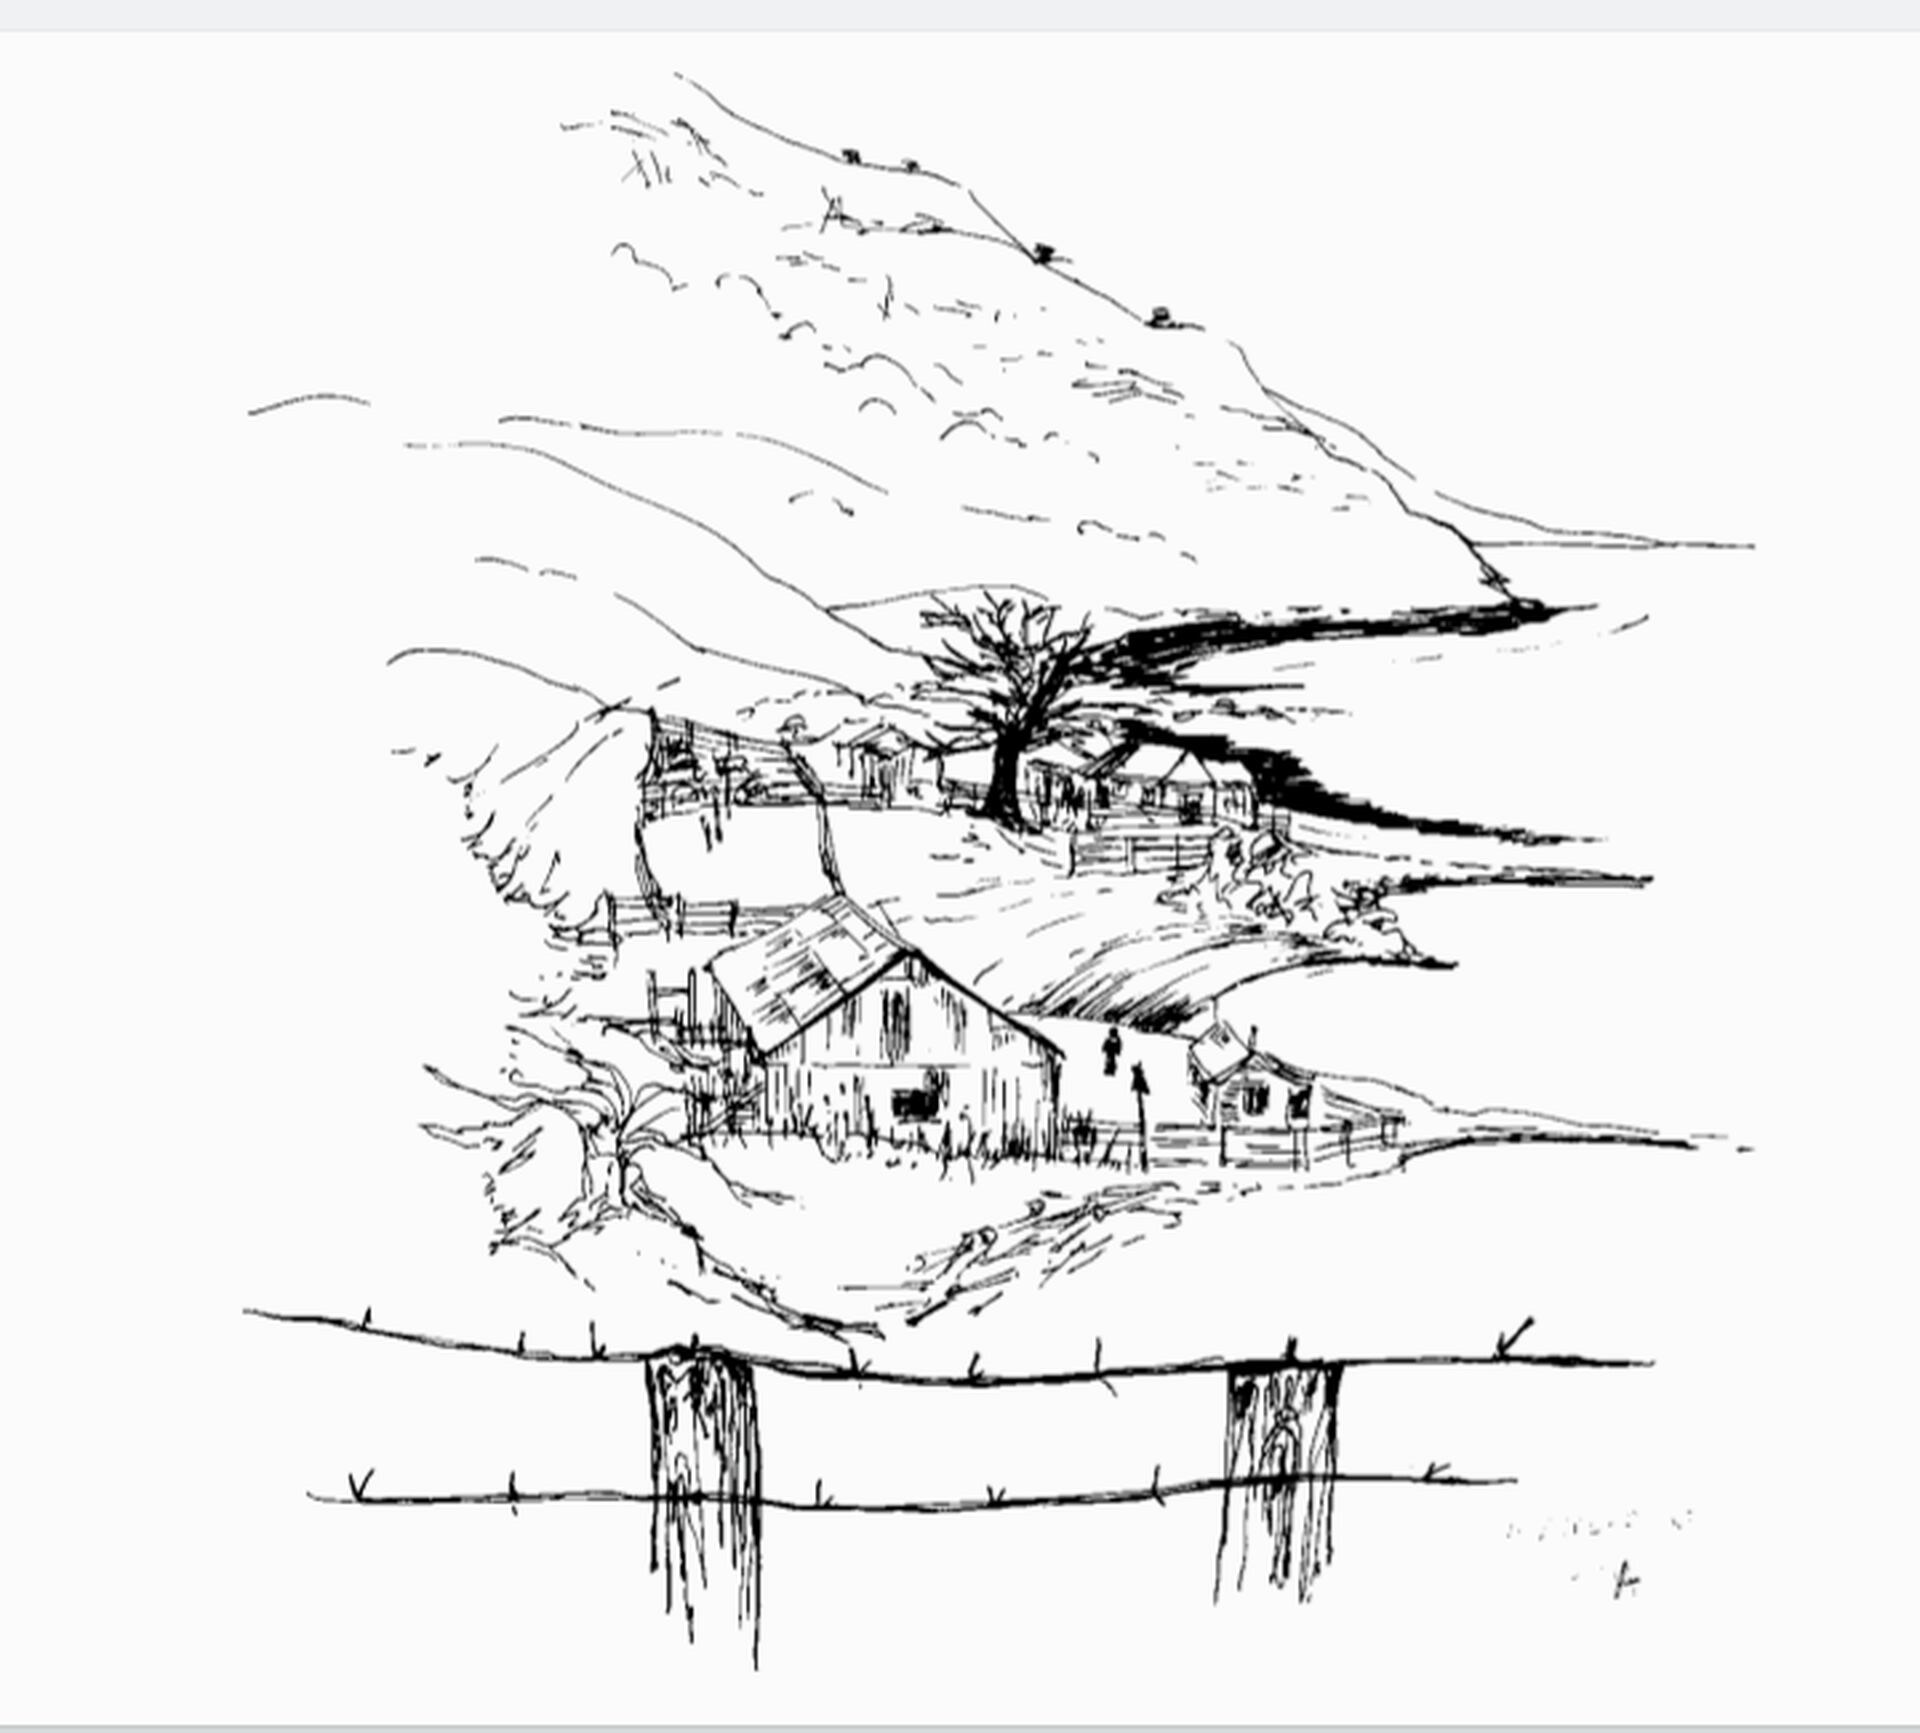 Enamorada de los paisajes y las construcciones de Ushuaia, Marine comenzó a dibujarlos. Años más tarde plasmó sus trabajos en un libro llamado "Ushuaia desconocida".